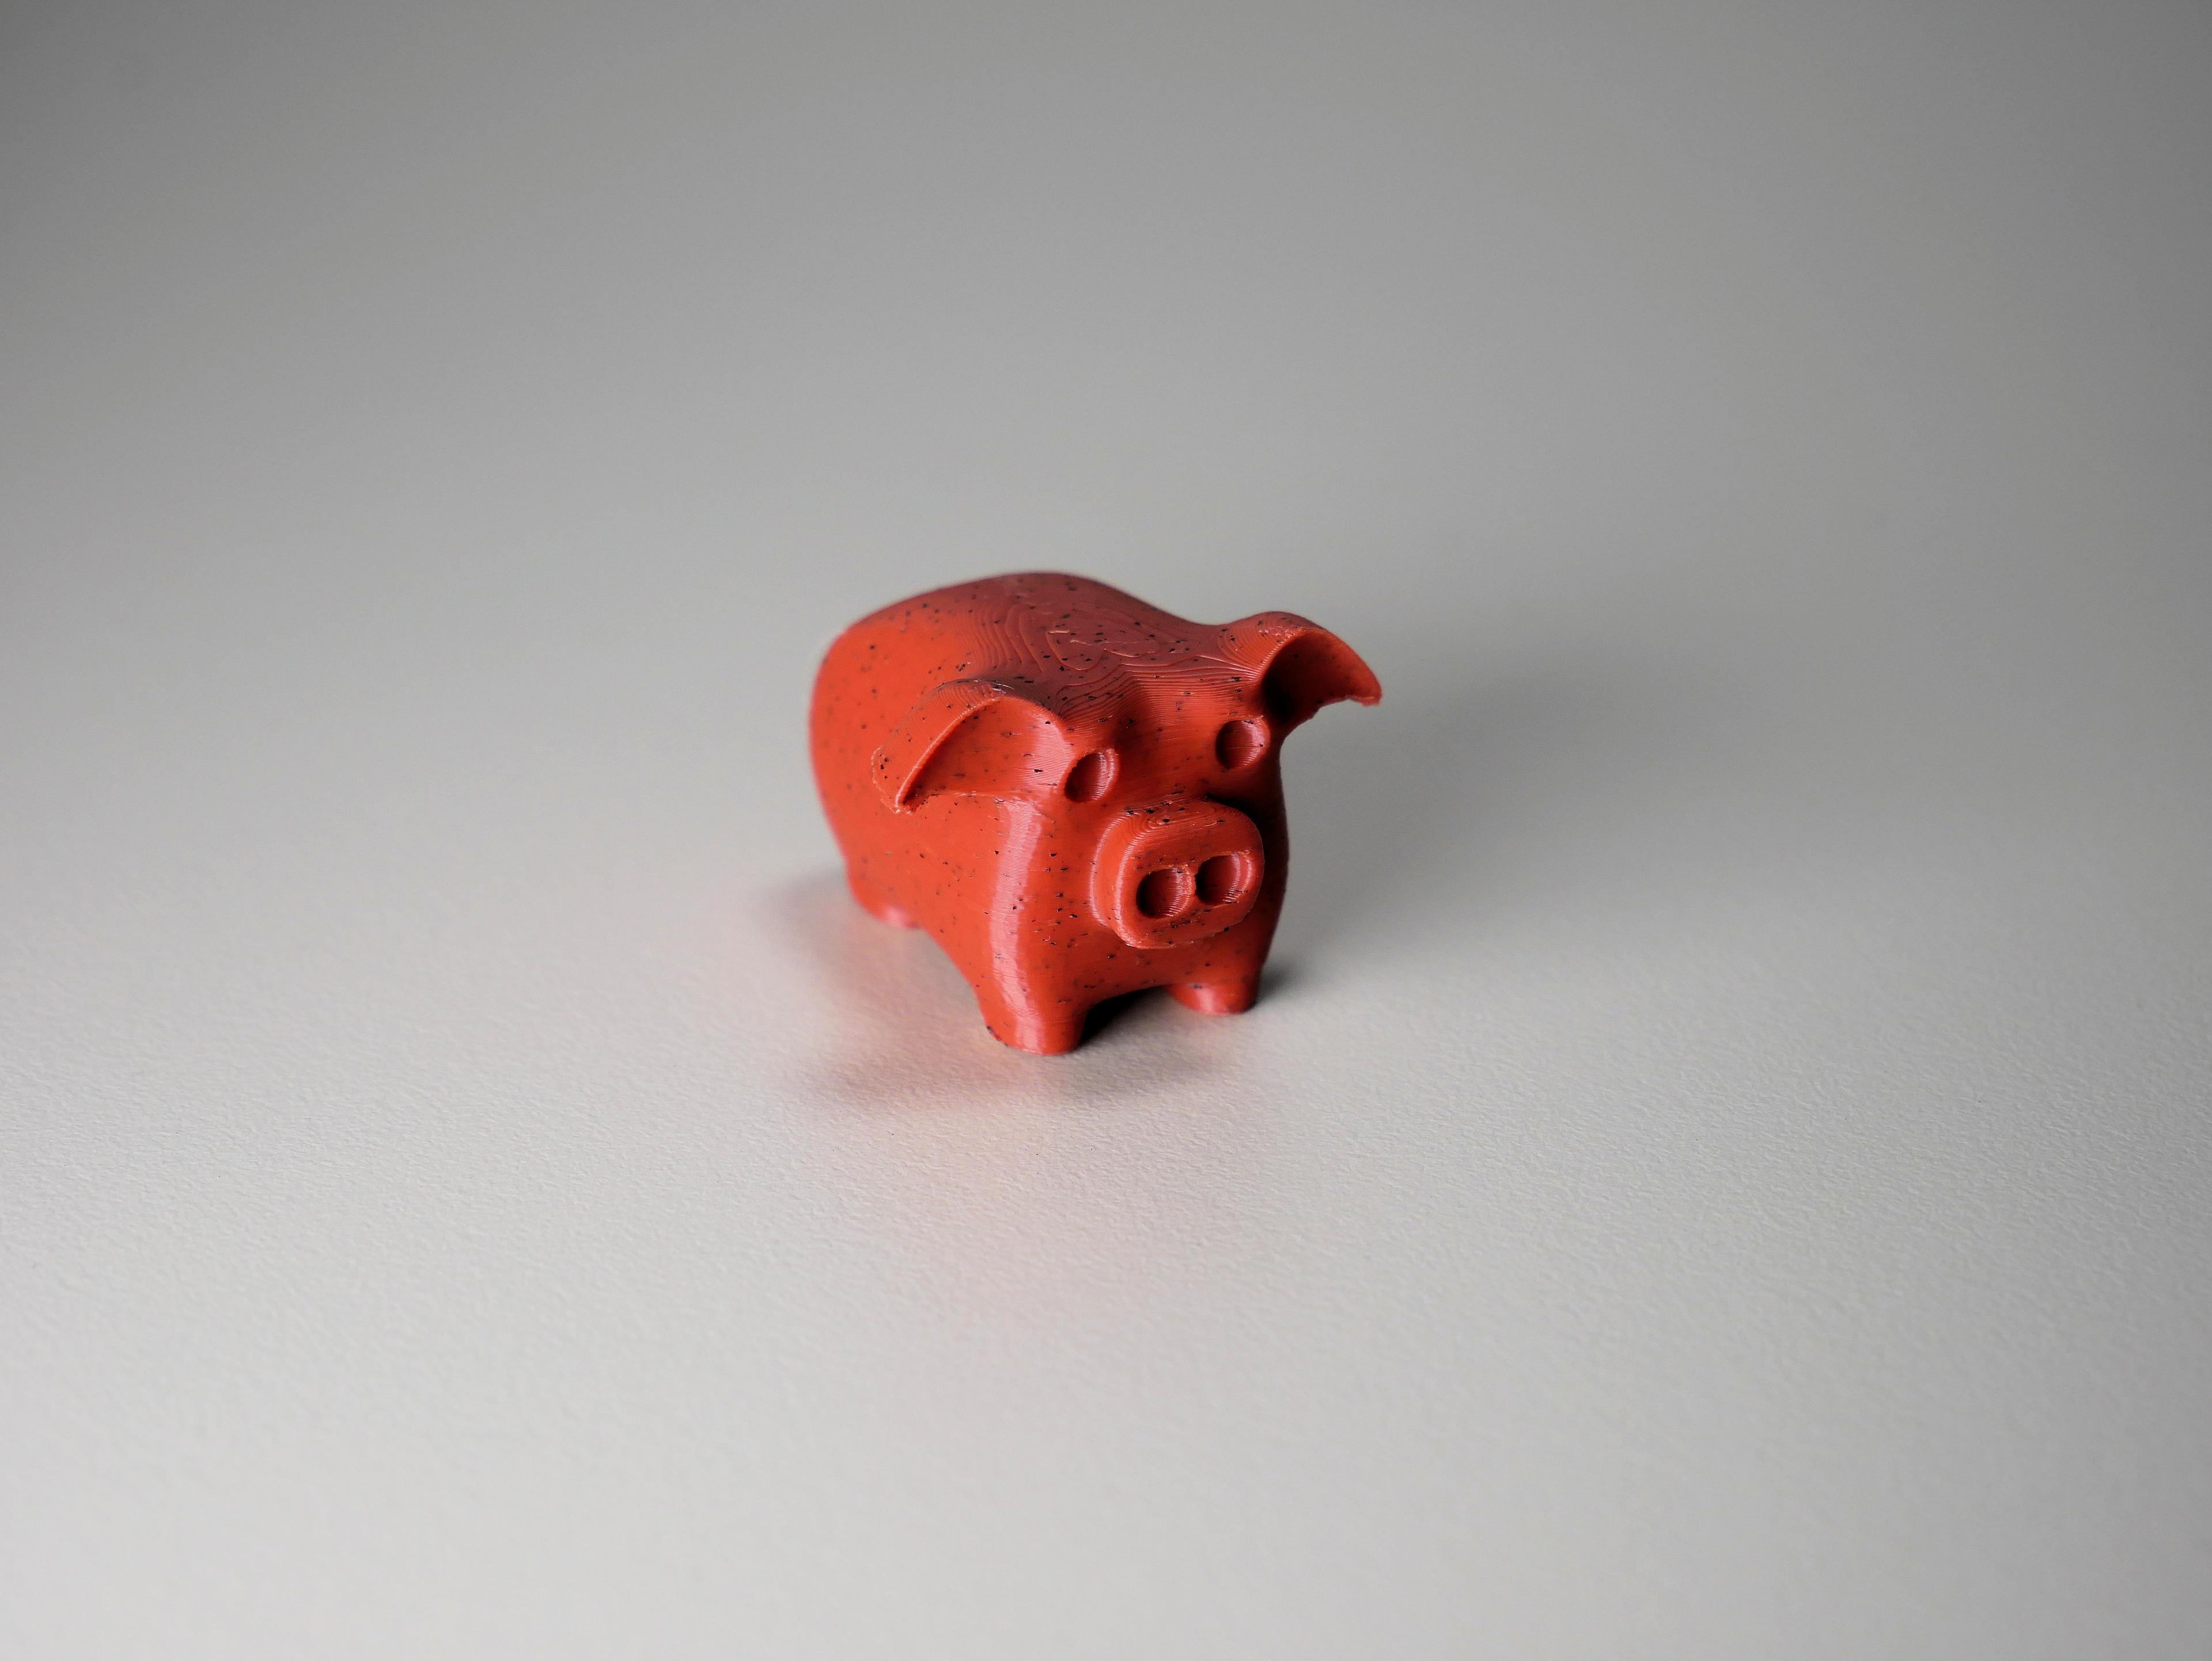 Tiny pig 3d model